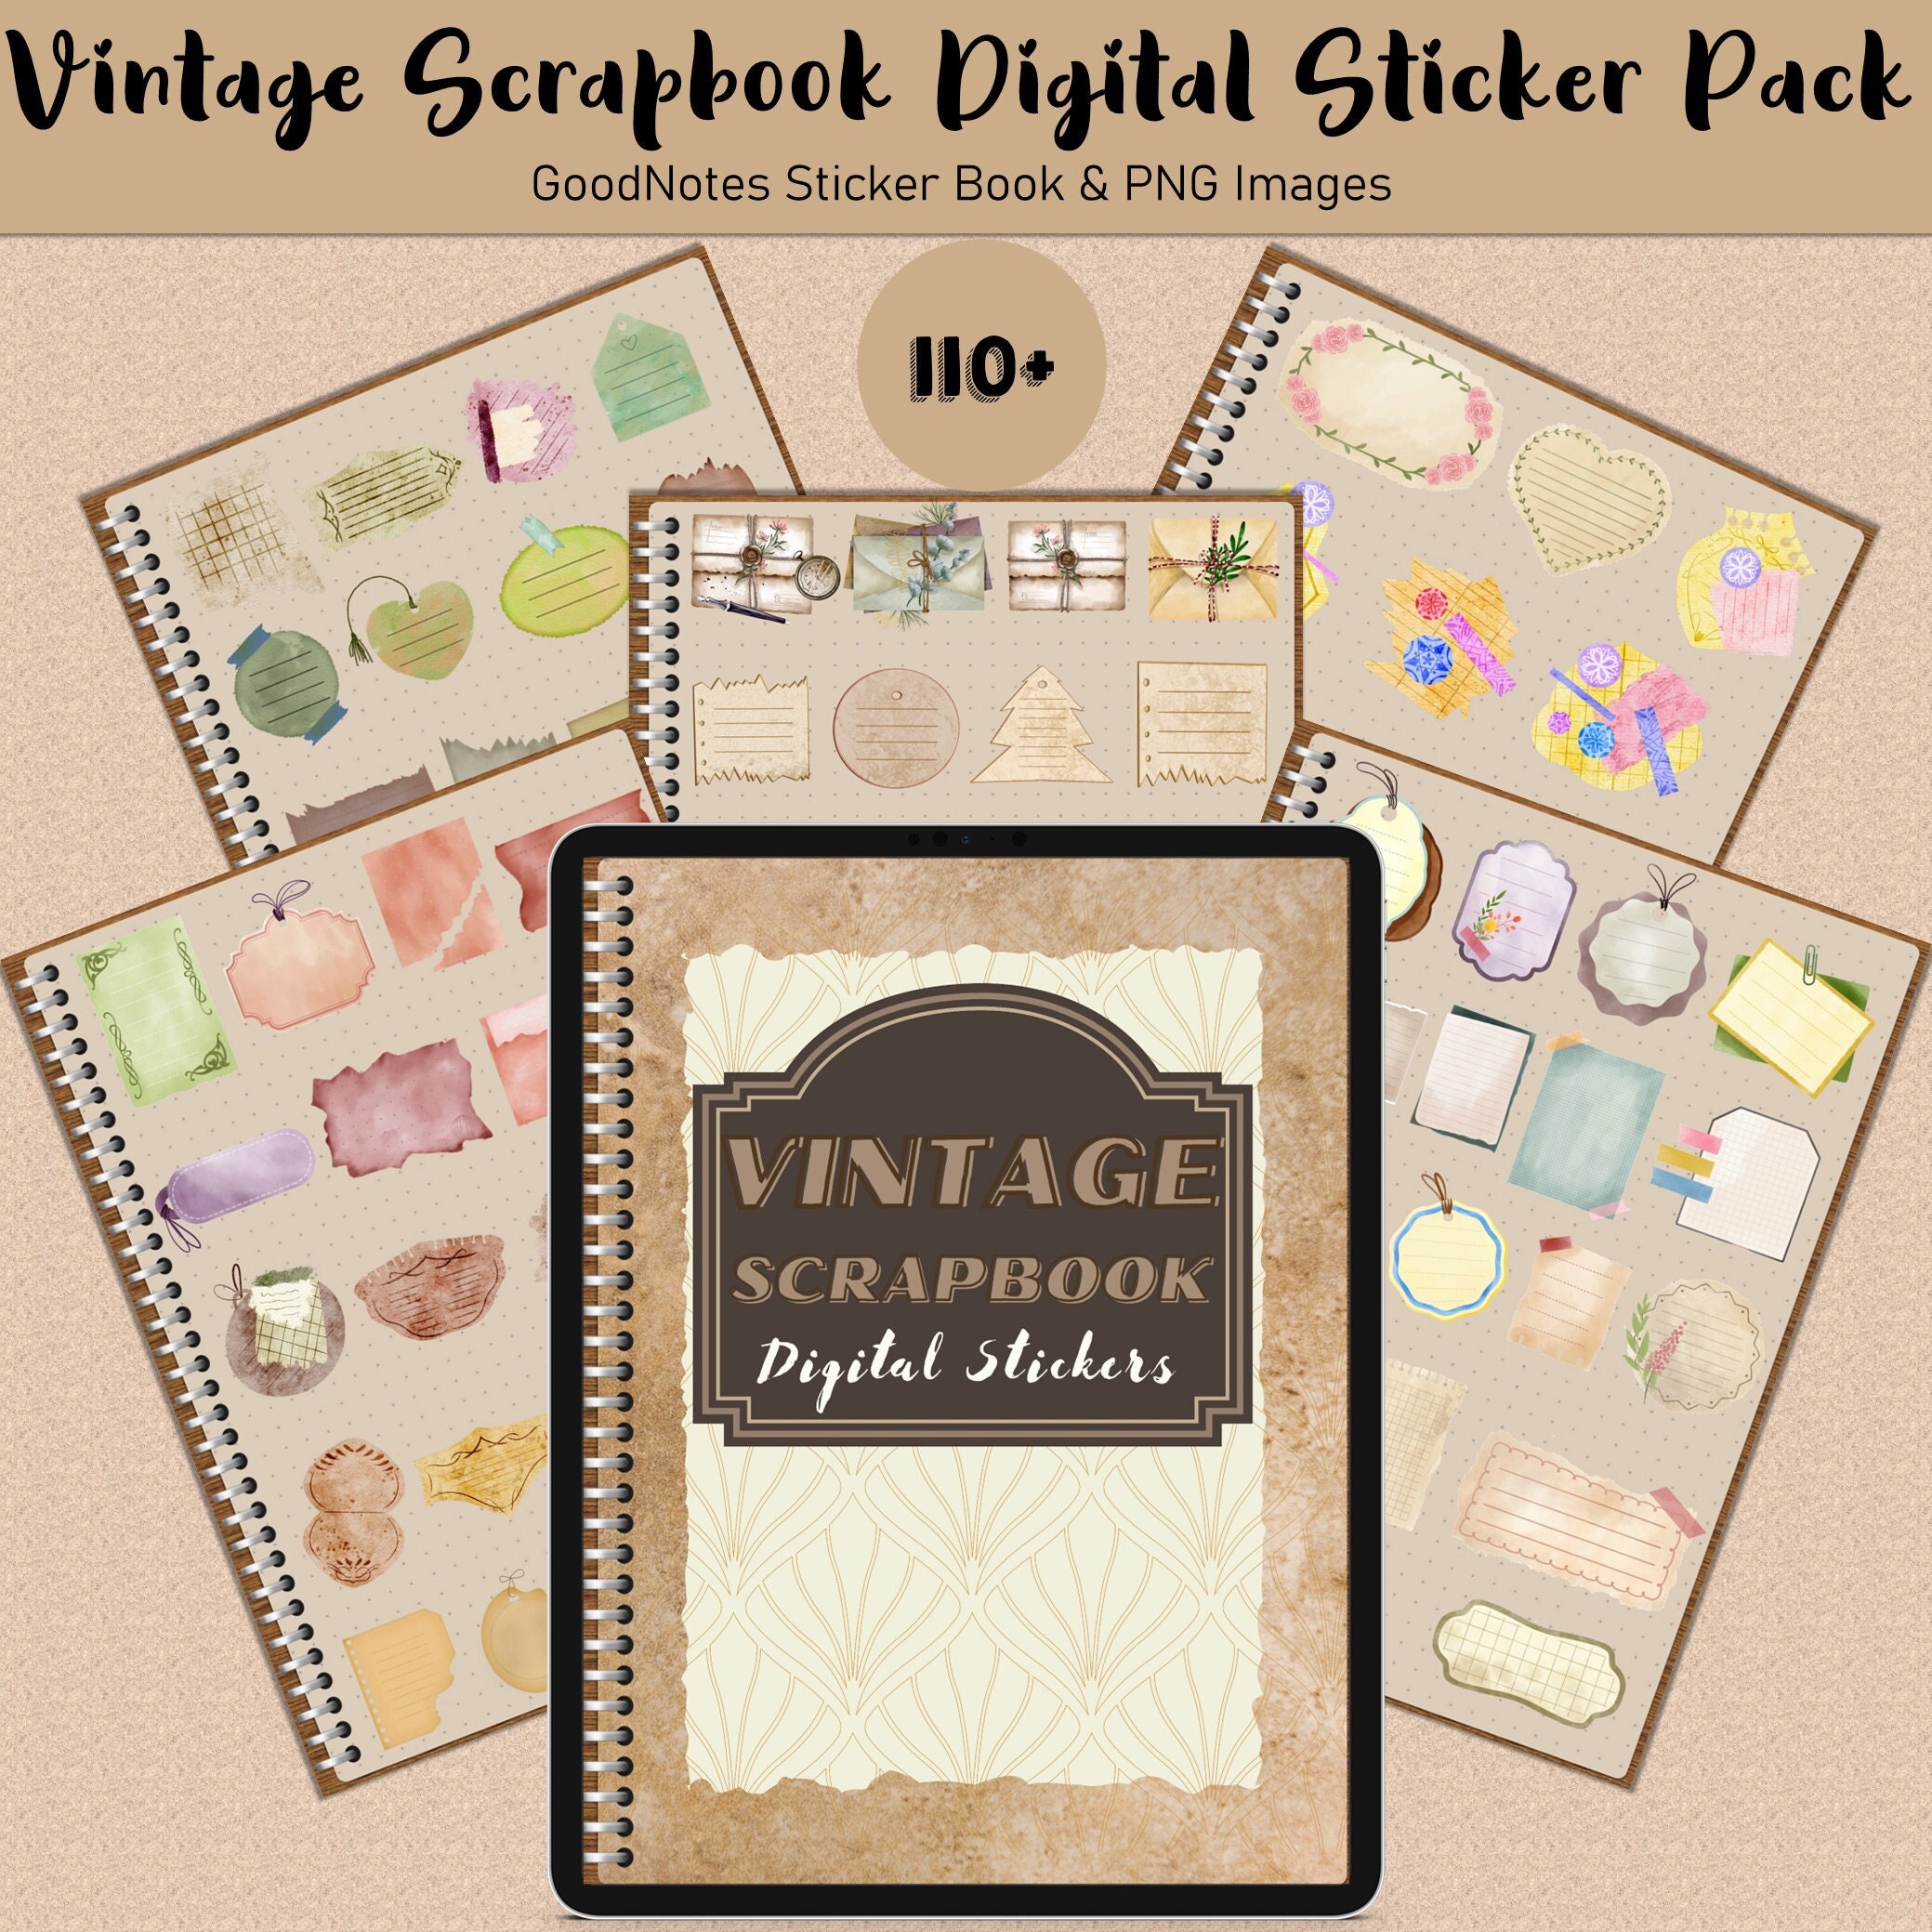 Vintage Scrapbook Digital Planner Sticker, All in One Goodnotes Digital  Sticker in Retro Scrapbook, Vintage Ornament Digital Planner Sticker 